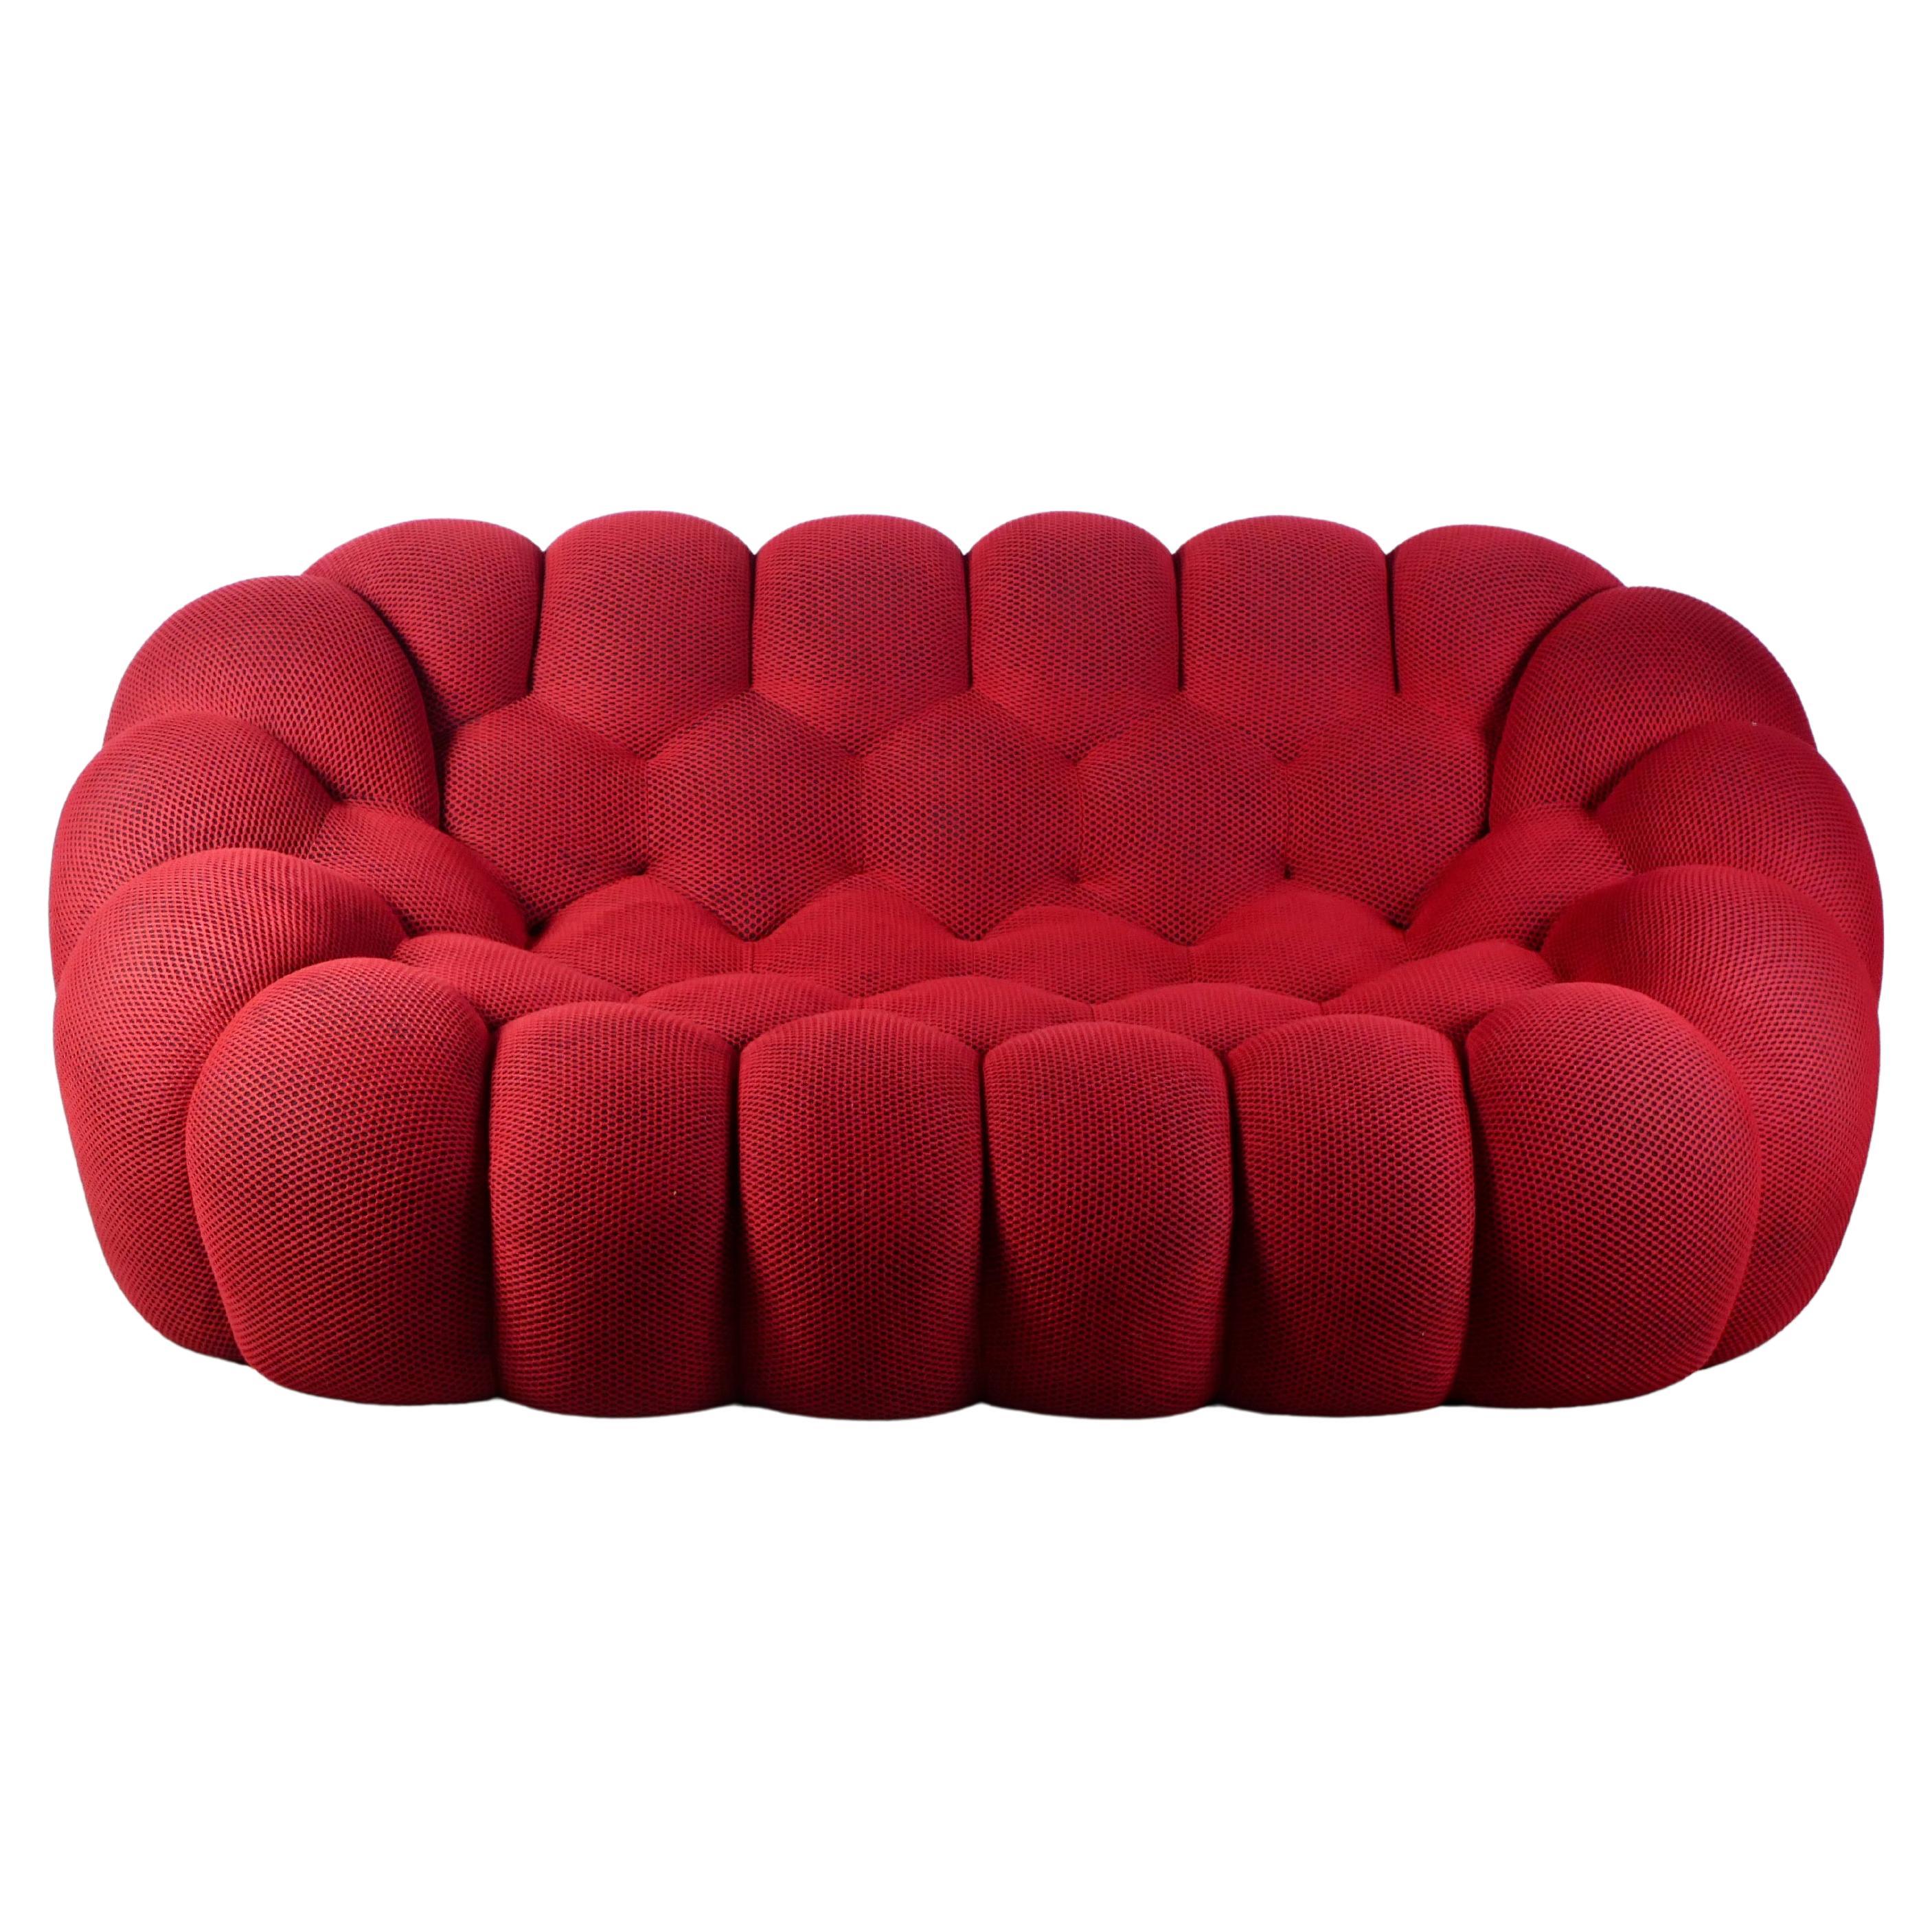 Bubble sofa Techno 3D fabric by Sacha Lakic for Roche Bobois, 2014